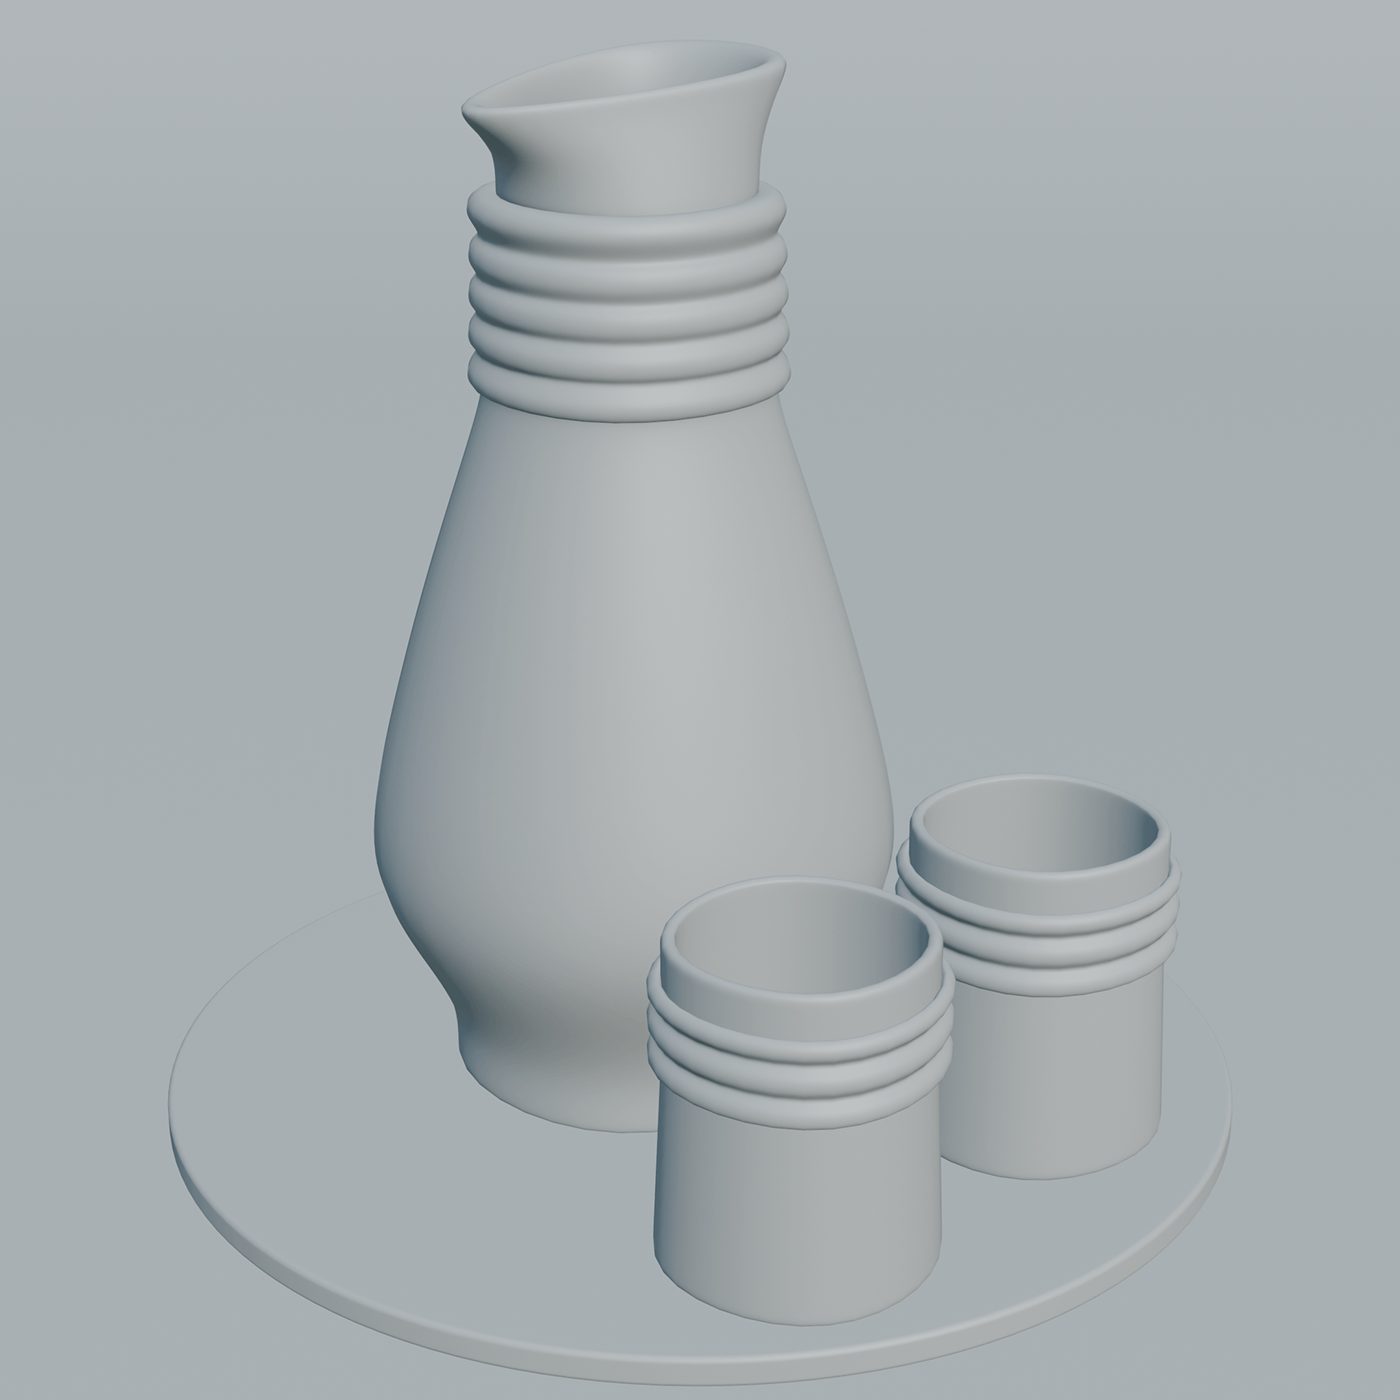 product design  3D blender 3d modeling Render cup Coffee